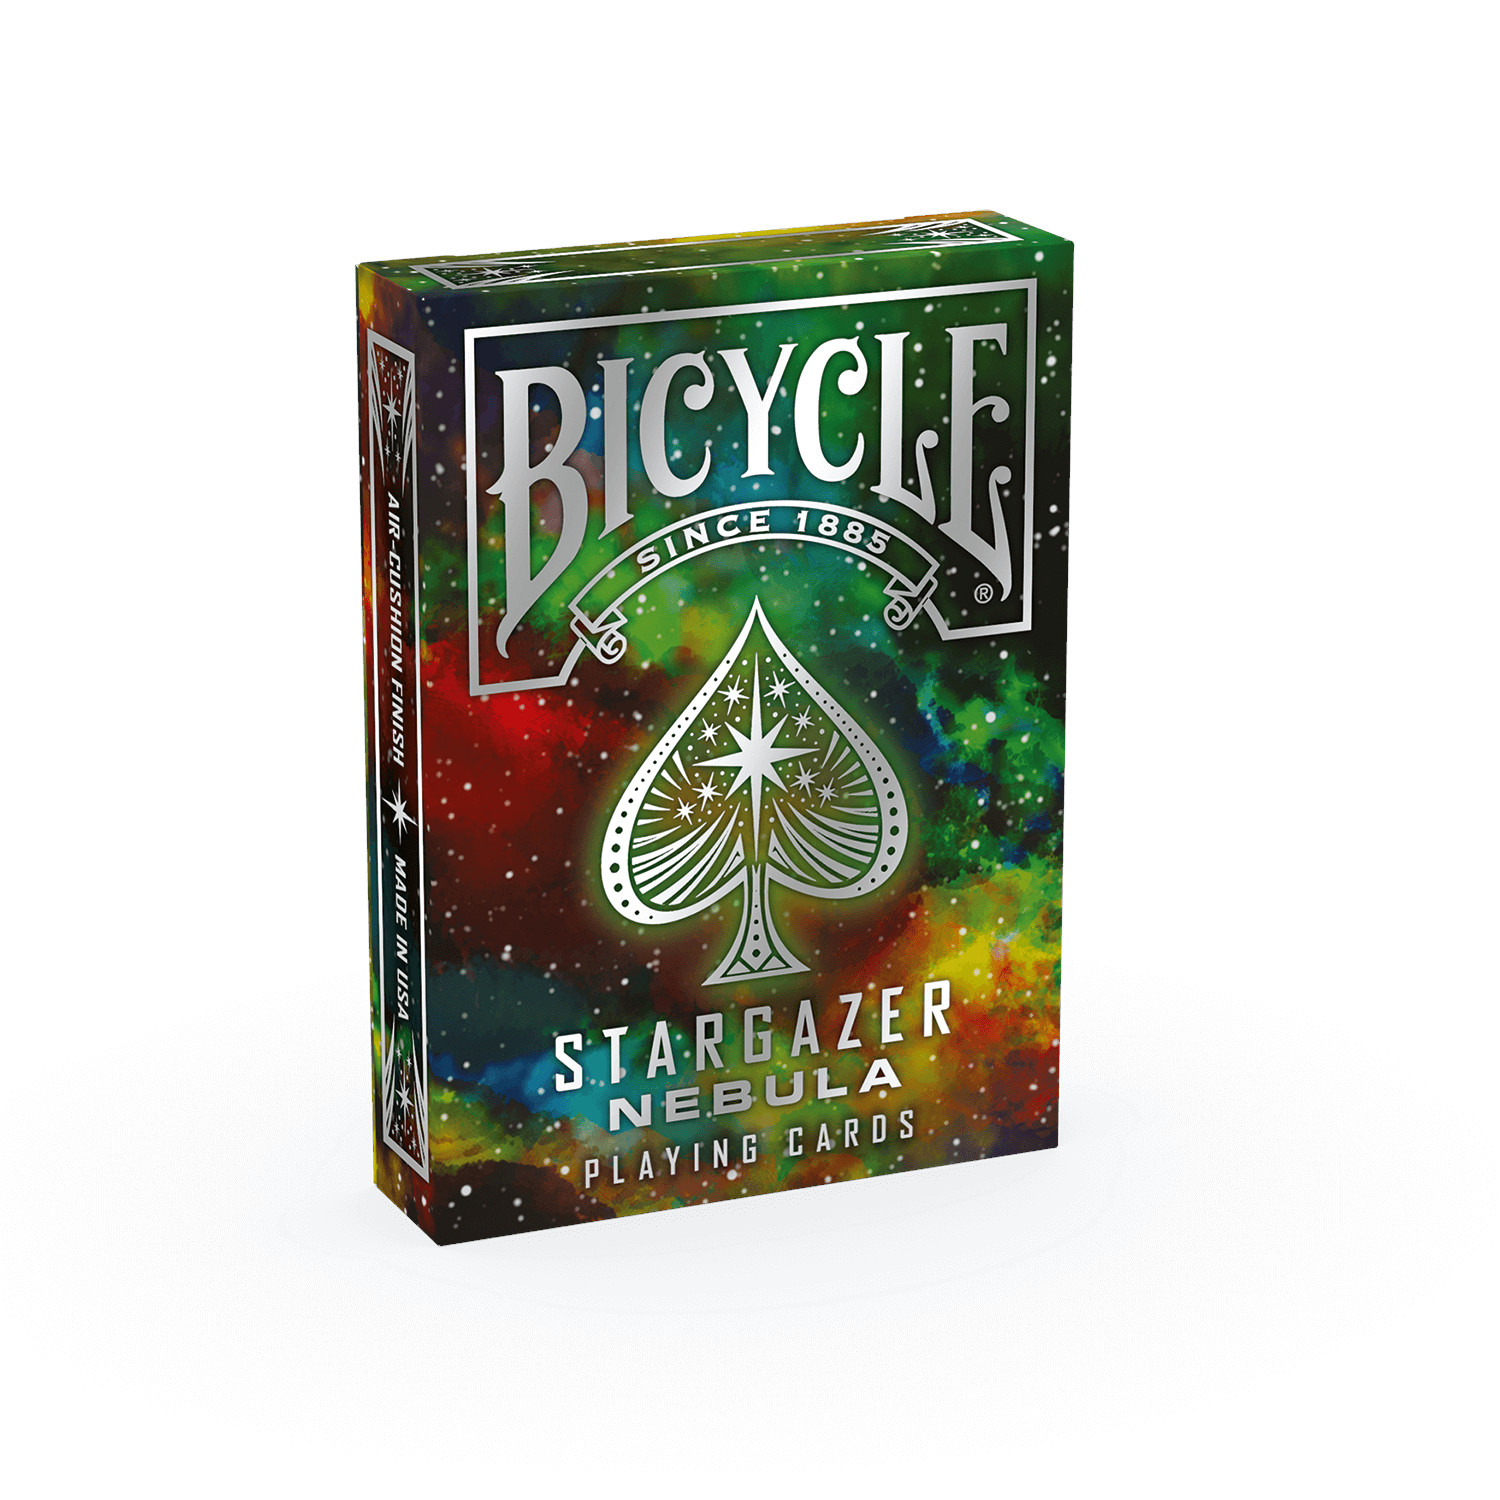 ASS ALTENBURGER Bicycle Stargazer Kartenspiel - Kartendeck Nebula